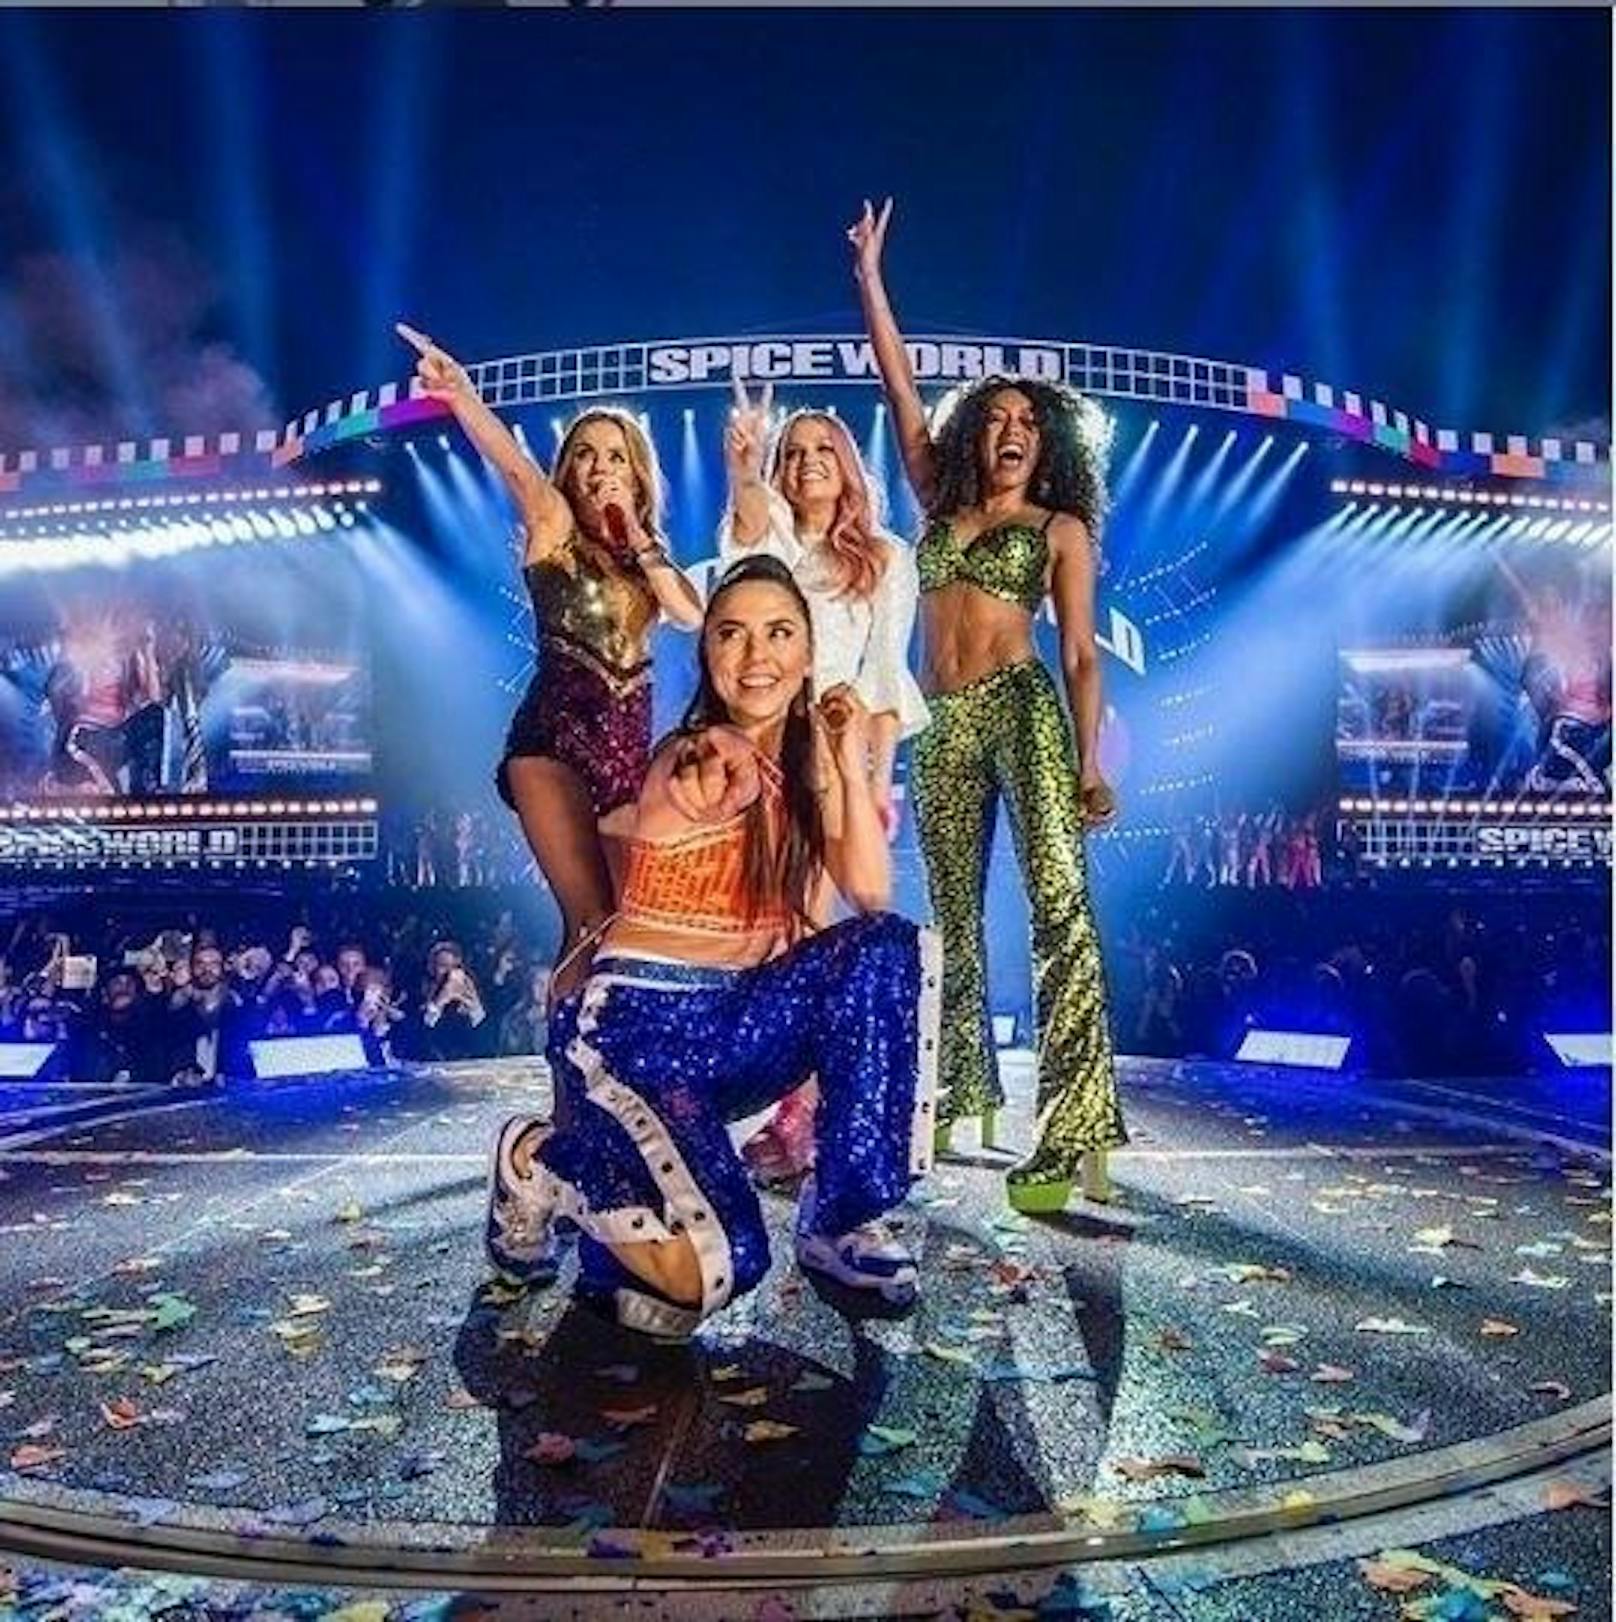 25.5.2019: Das erste Konzert der Spice-Girl-Reunion-Tour wurde ein bombastischer Erfolg. 82.000 Fans schrien sich in Dublin die Seele aus dem Leib <a href="https://www.heute.at/szene/musik/story/Spice-Girls-Reunion-2019-Dublin-Konzert-Show-Croke-Park-Emma-Mel-C-Mel-B-Geri-56841202">Mehr Videos, Fotos und Infos HIER</a>